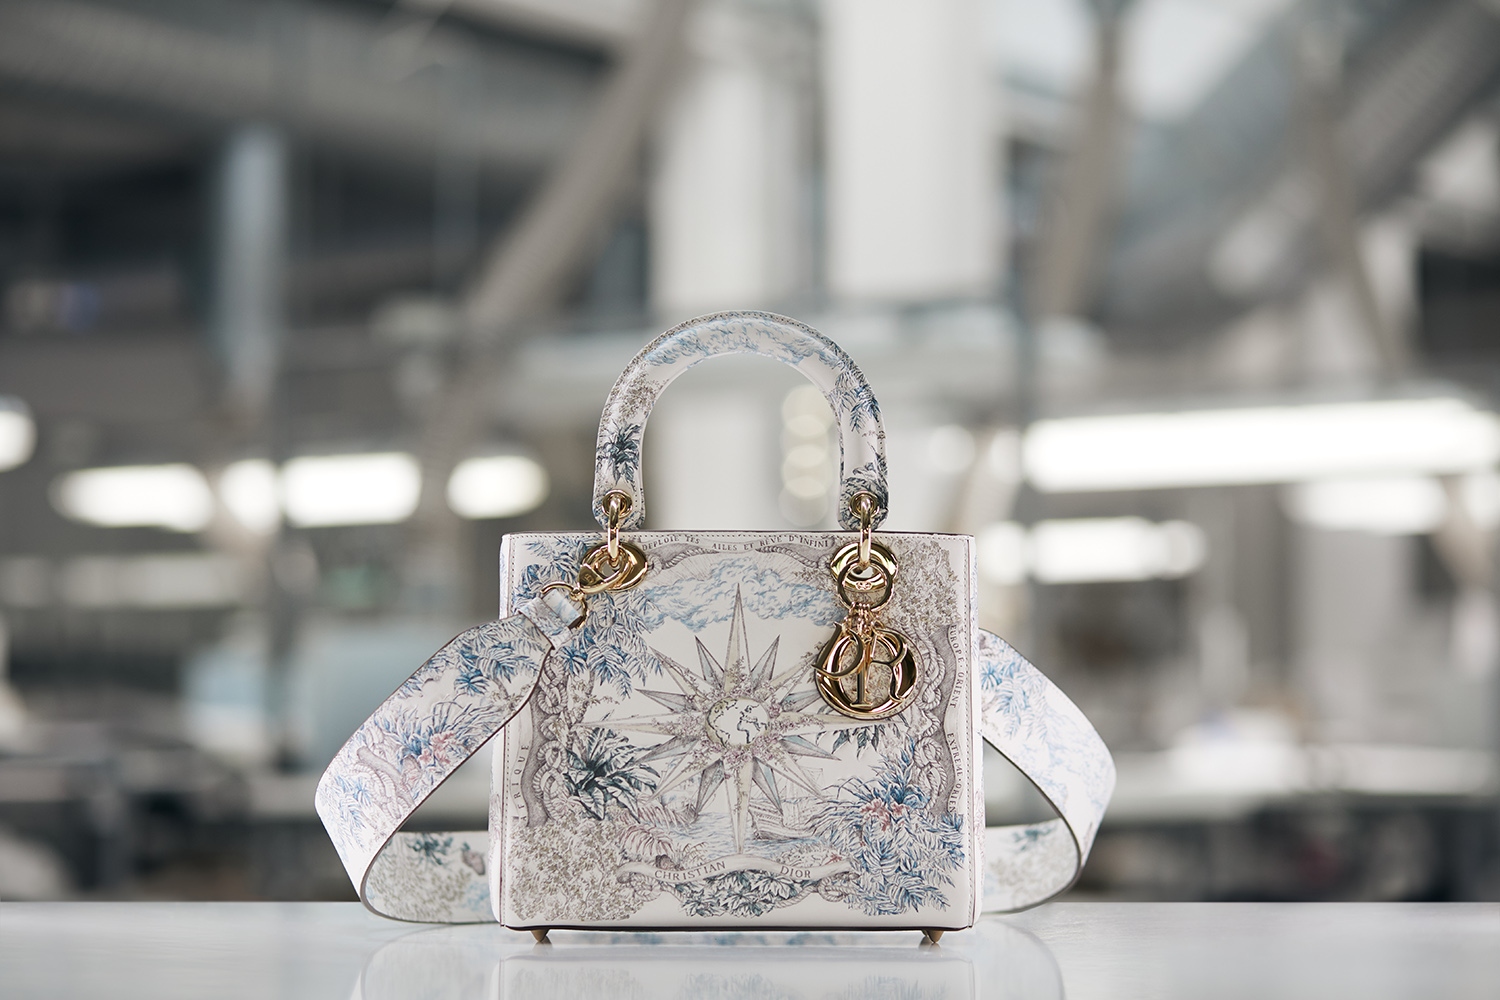 Mẫu túi Dior mới nhất 2023 đáng mua  Ruby Luxury